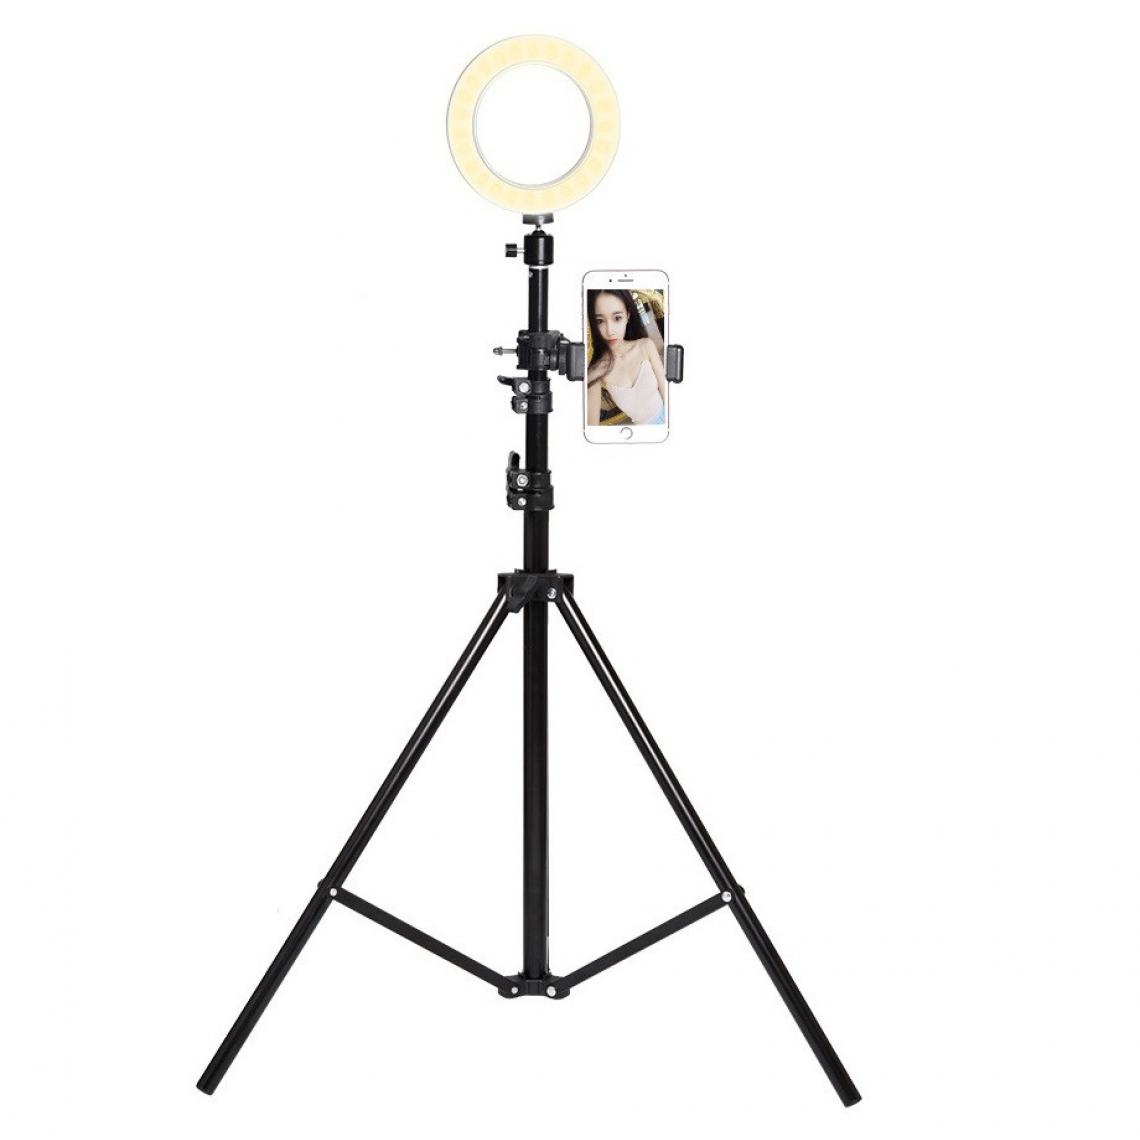 Shot - Trepied Telescopique avec Flash pour HONOR 6X Smartphone Reglable Photo (NOIR) - Autres accessoires smartphone